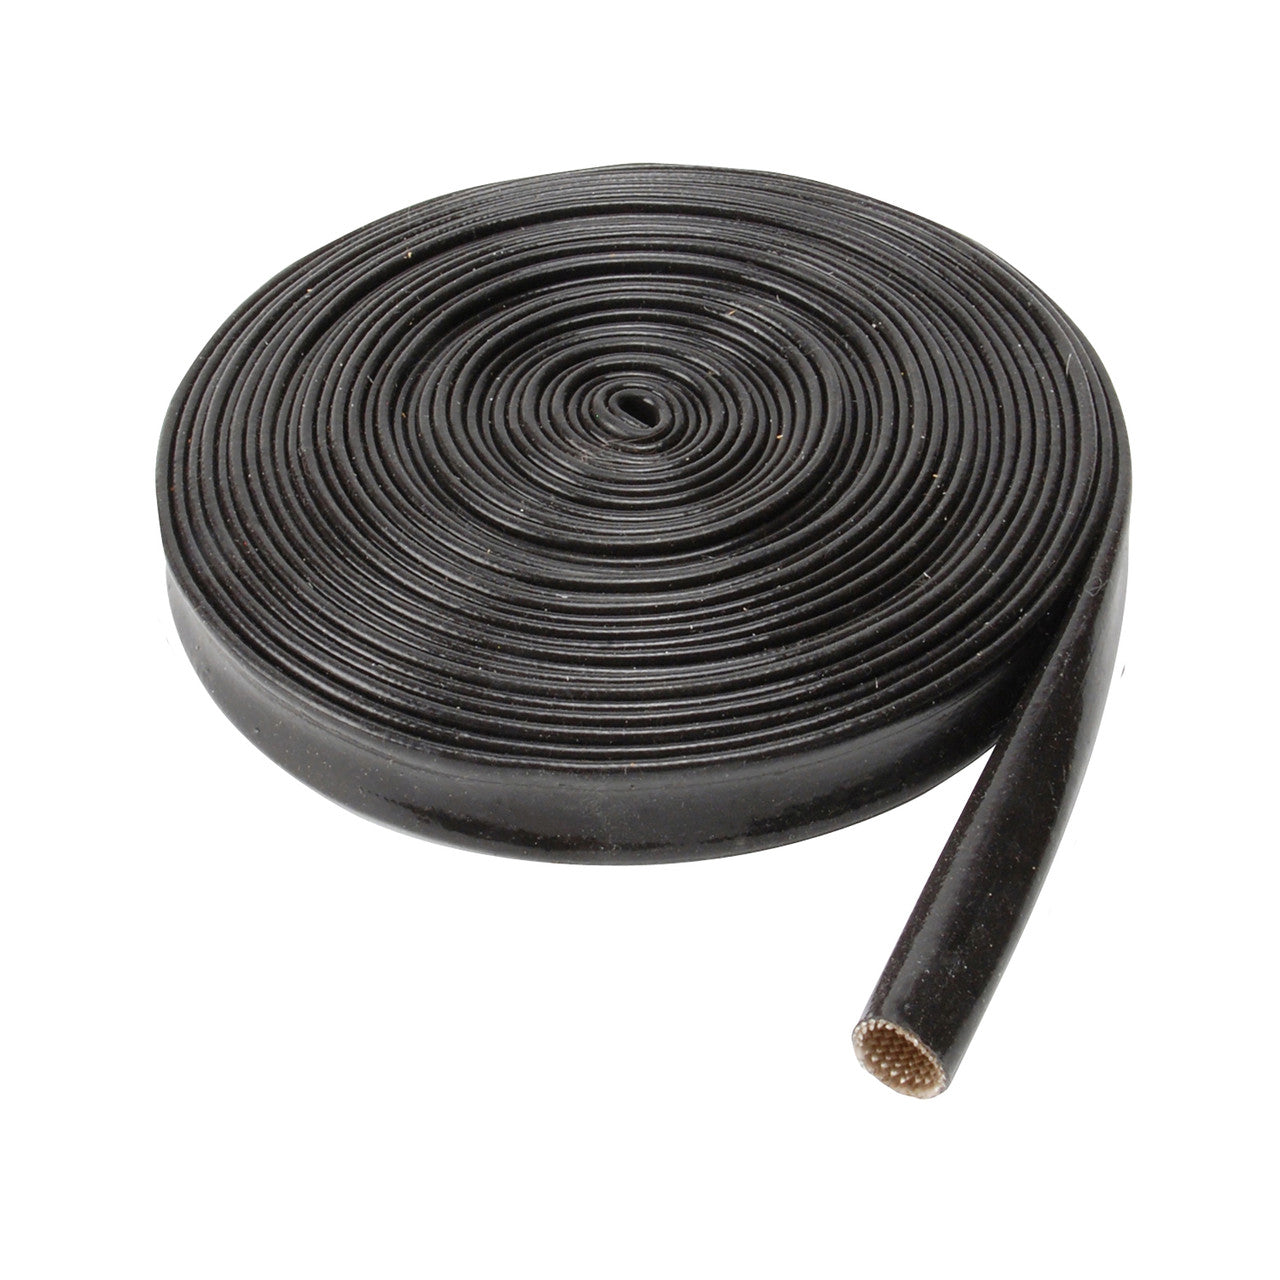 DEI 10658 Protect A-Wire Spools Black 10mm x 50' Photo-0 